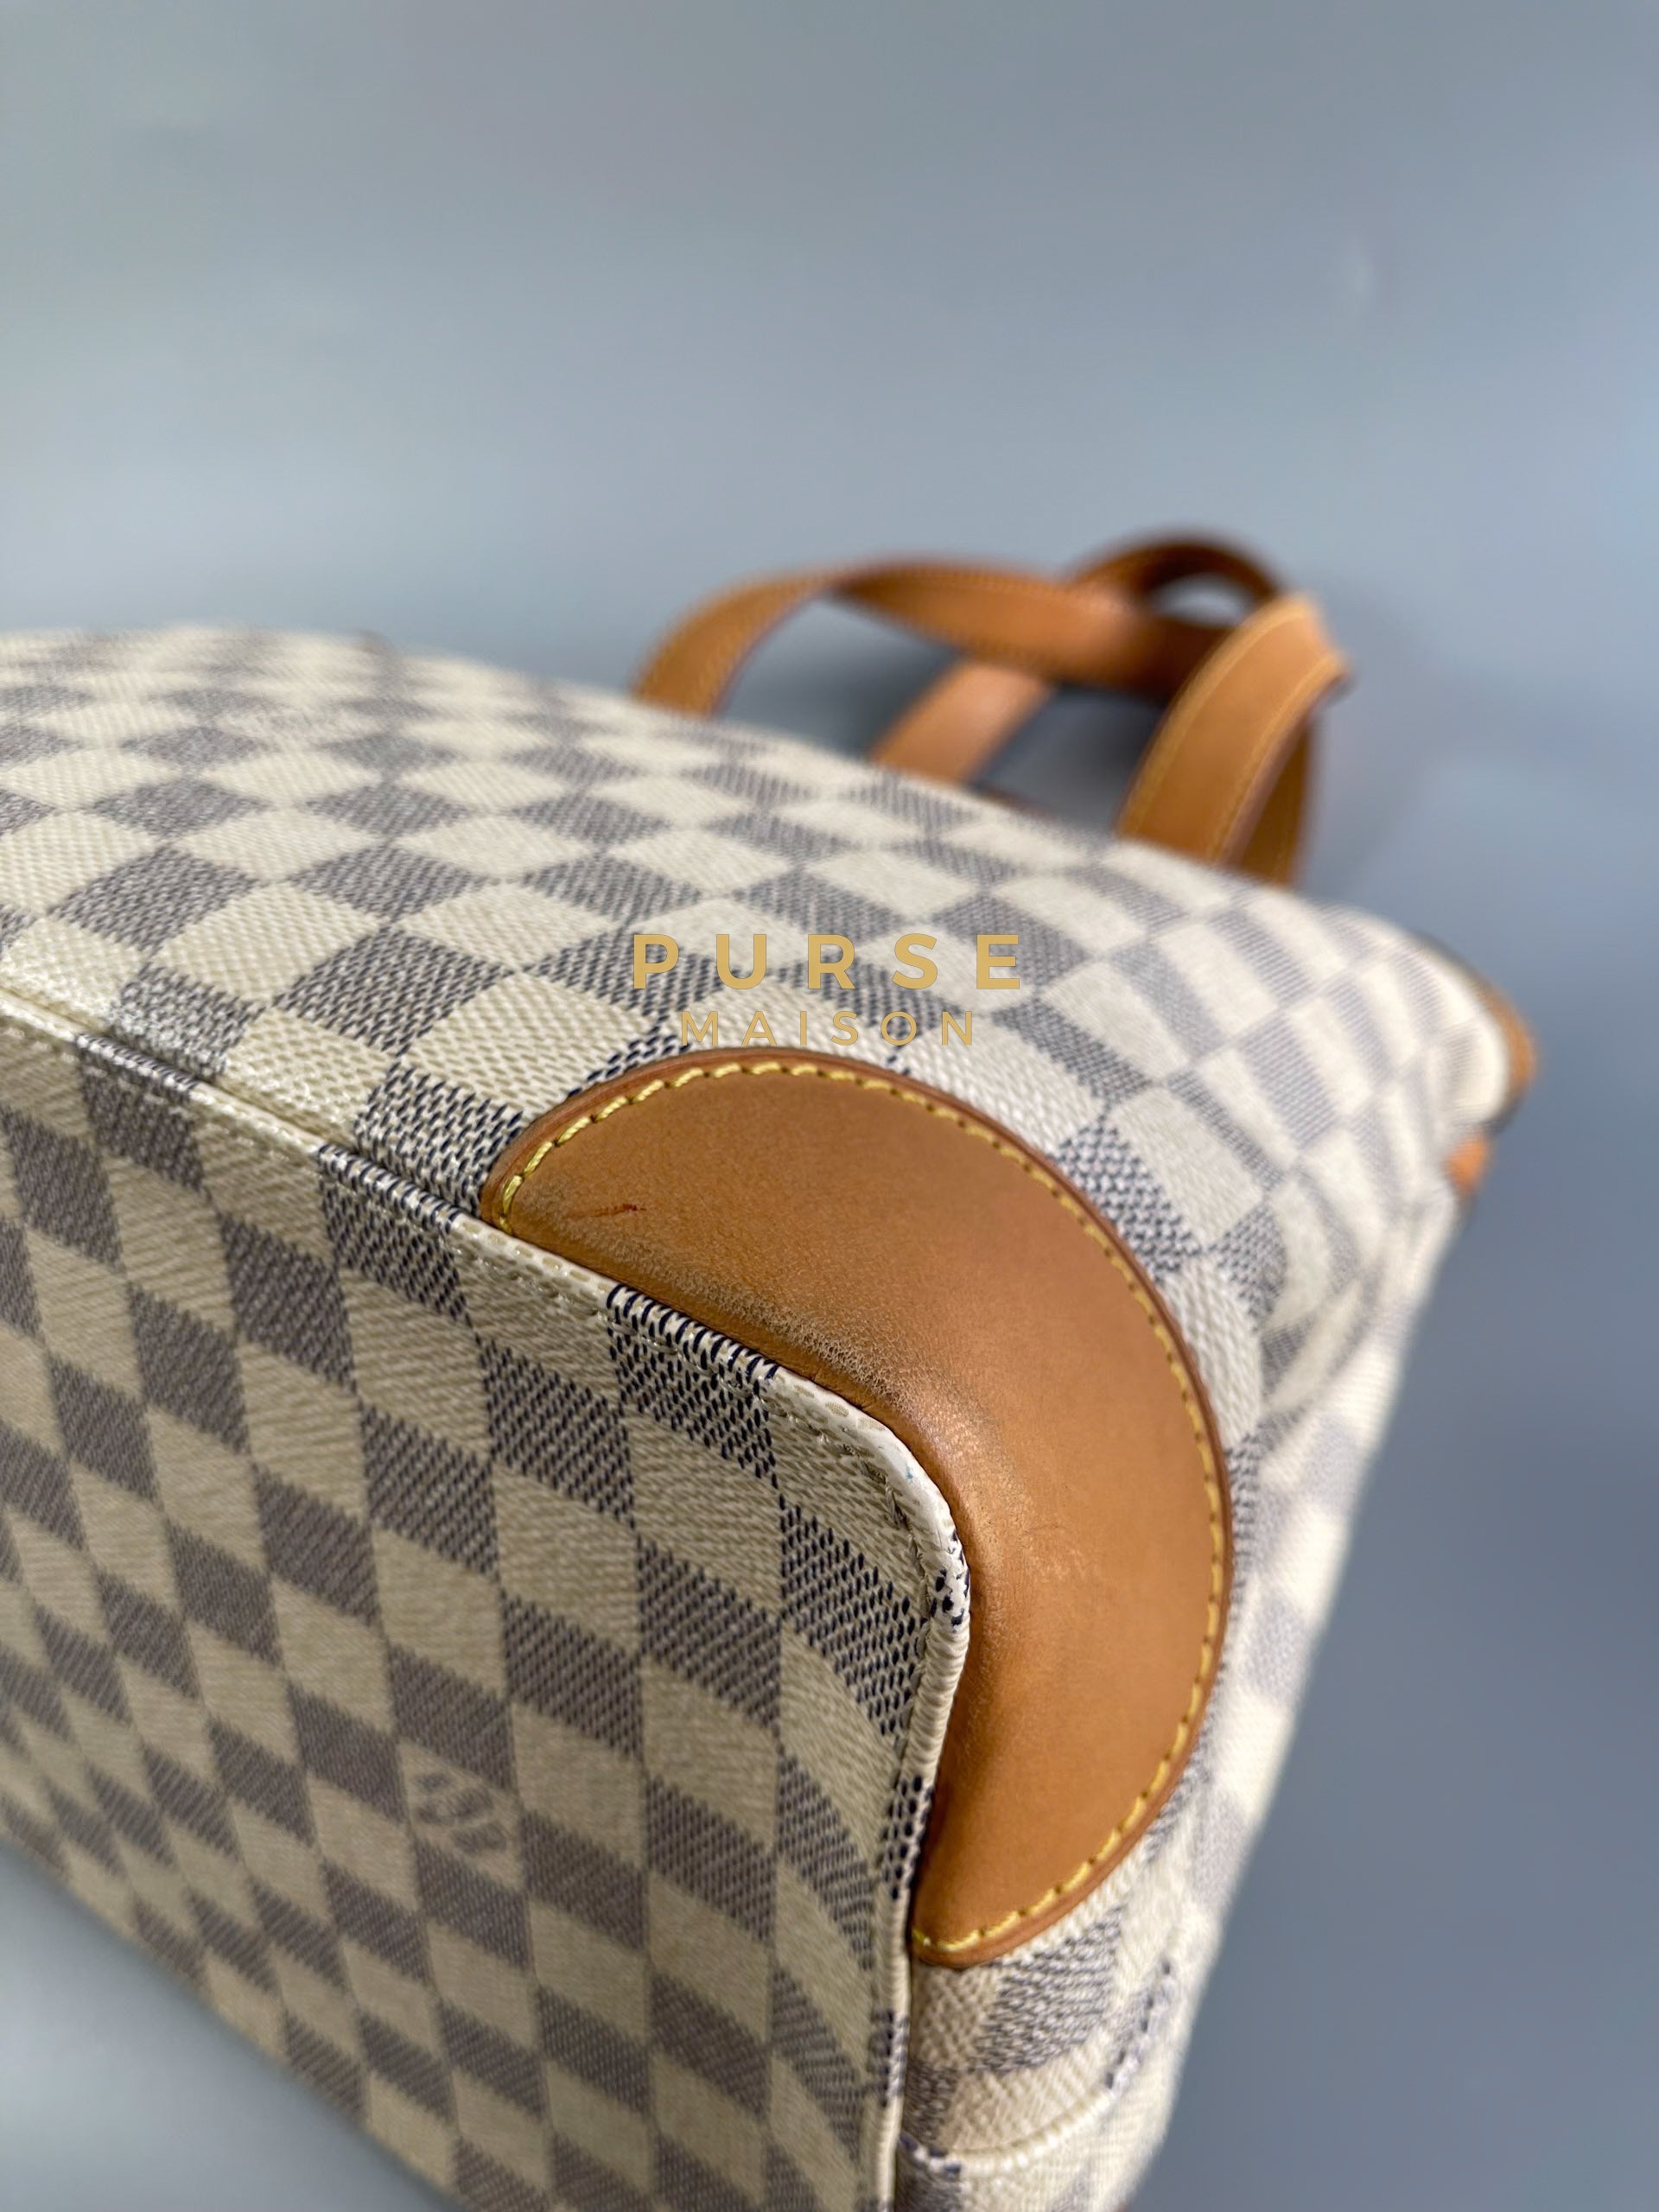 Hampstead PM Damier Azure Canvas (Date code: CR2120) | Purse Maison Luxury Bags Shop